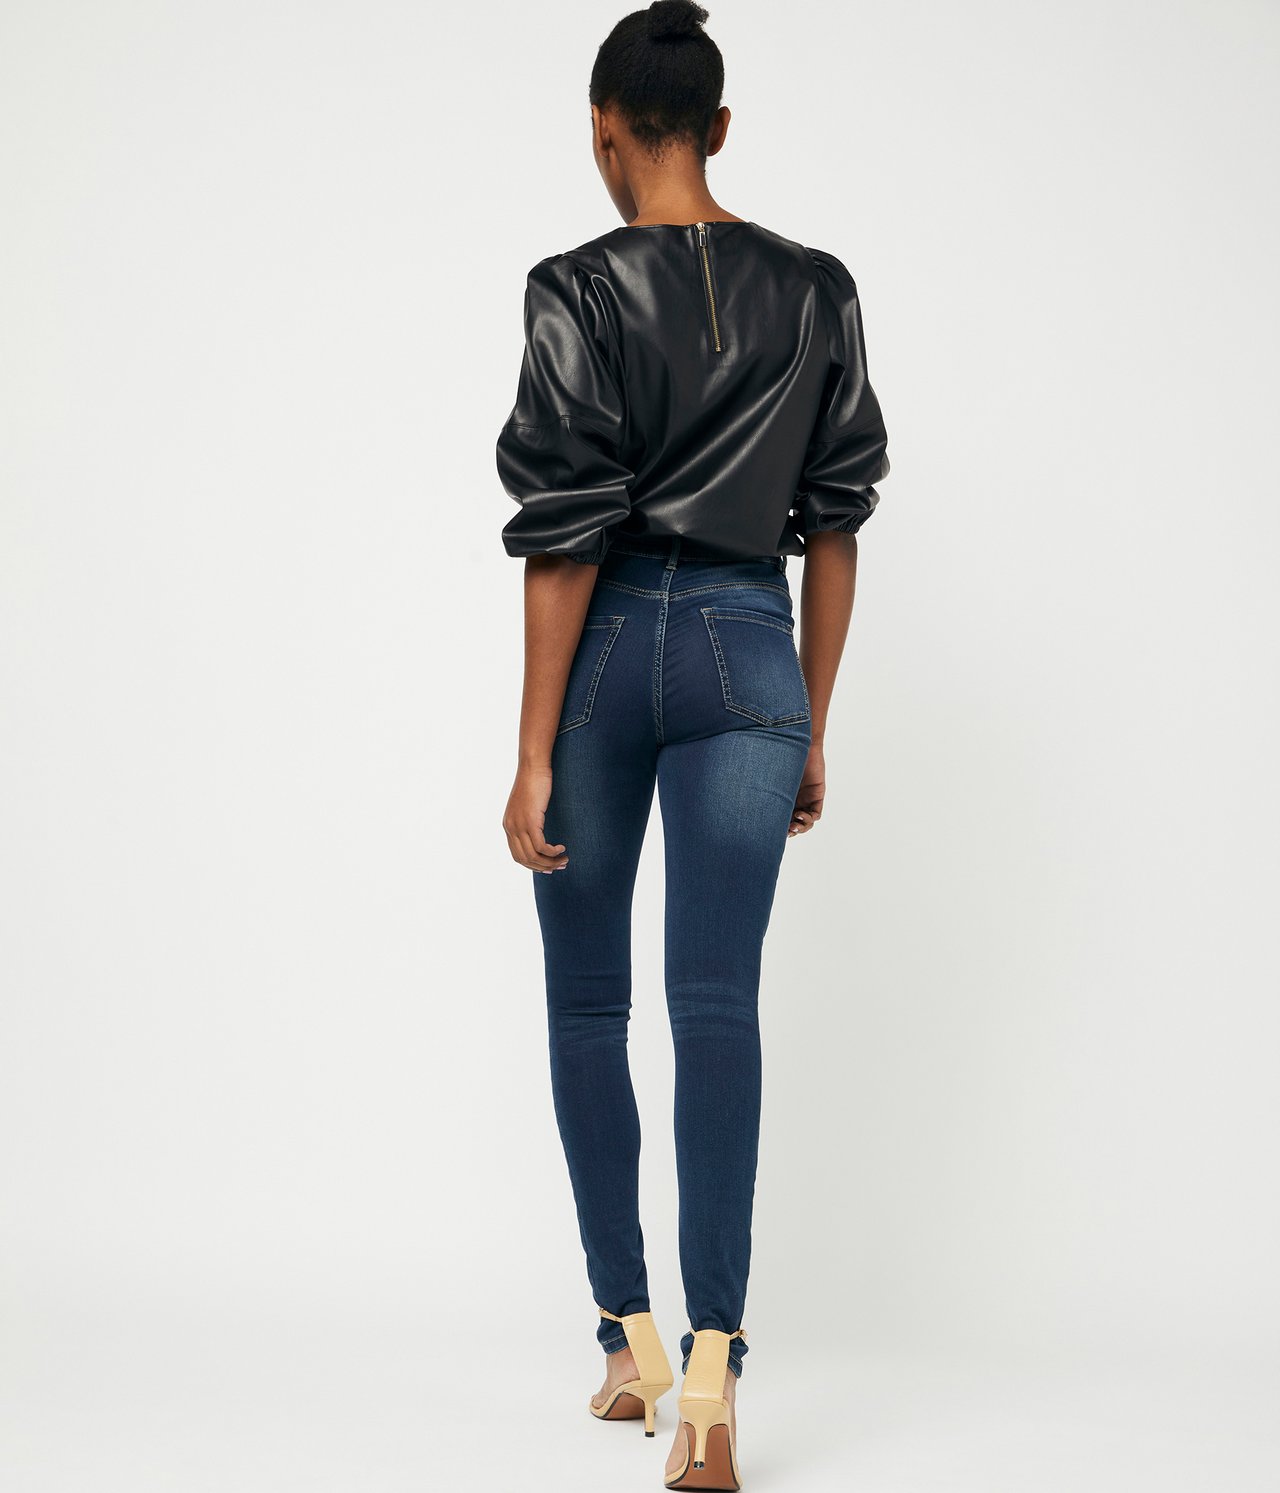 Super slim jeans extra long leg - Mørk denim - 2